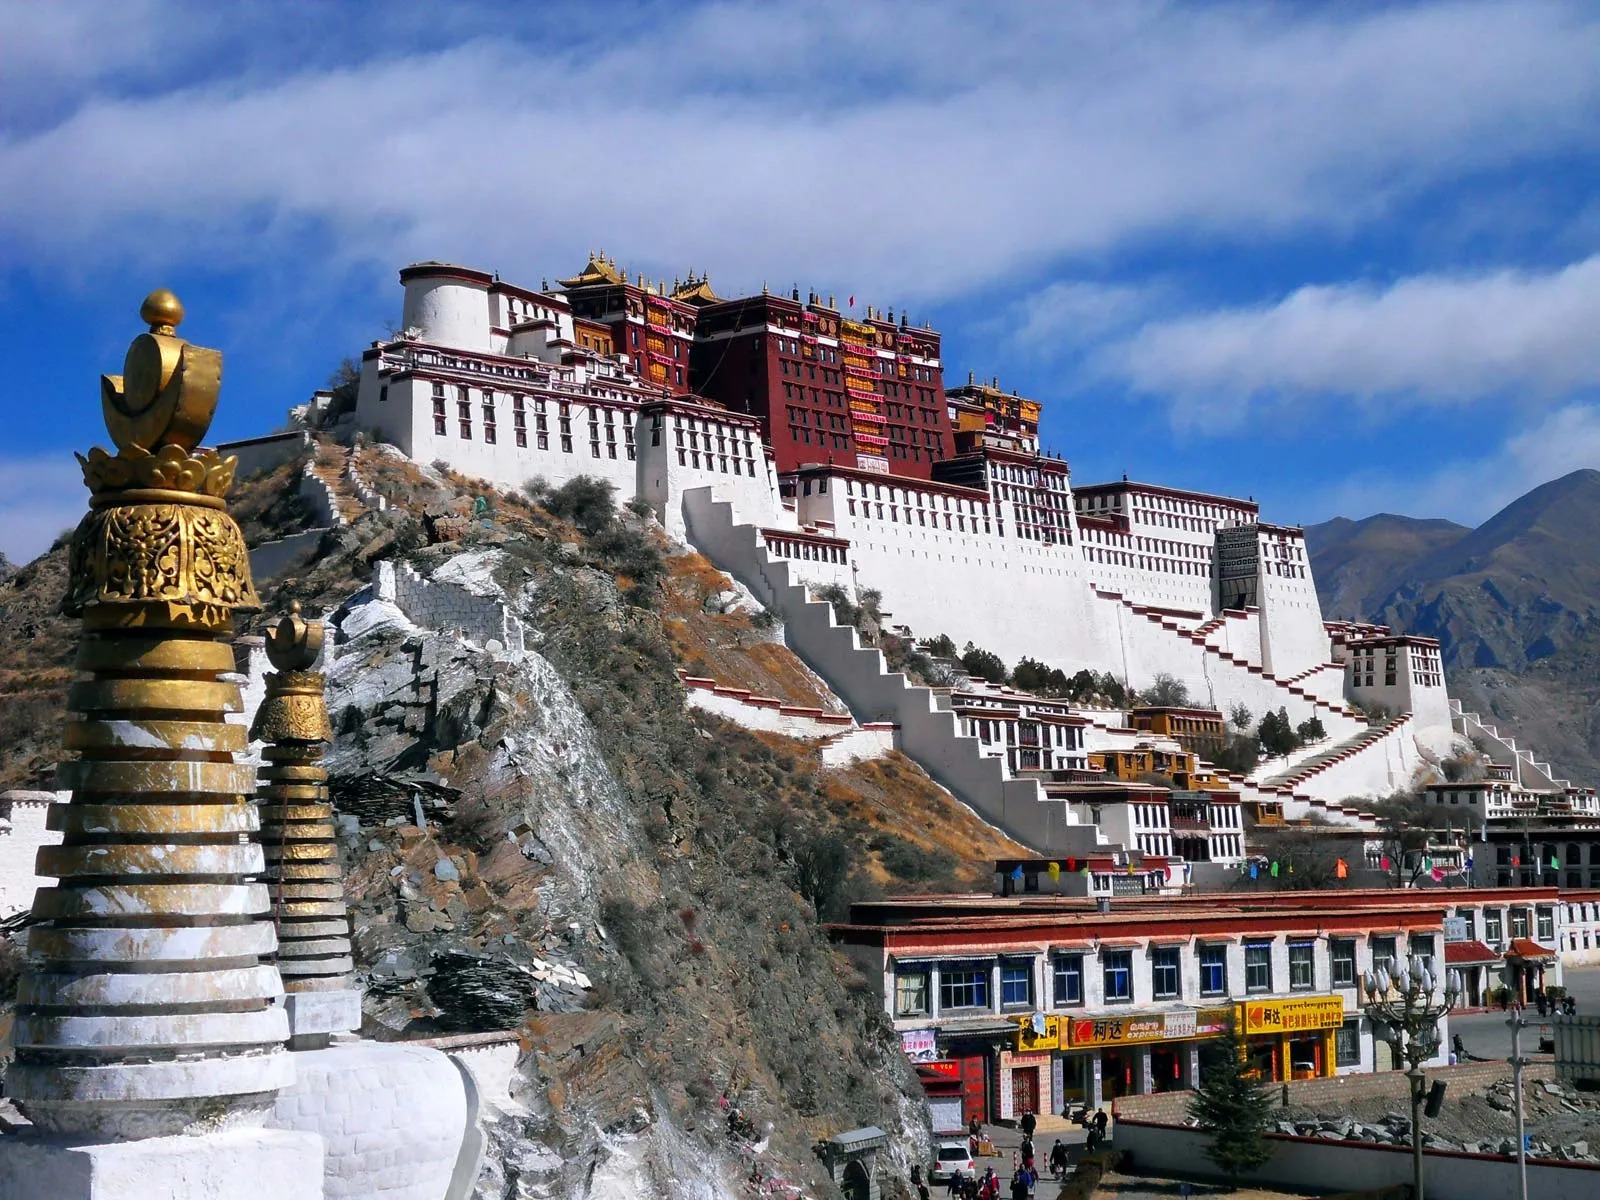 Cung điện Potala và những dấu ấn Phật giáo Tây Tạng đặc sắc